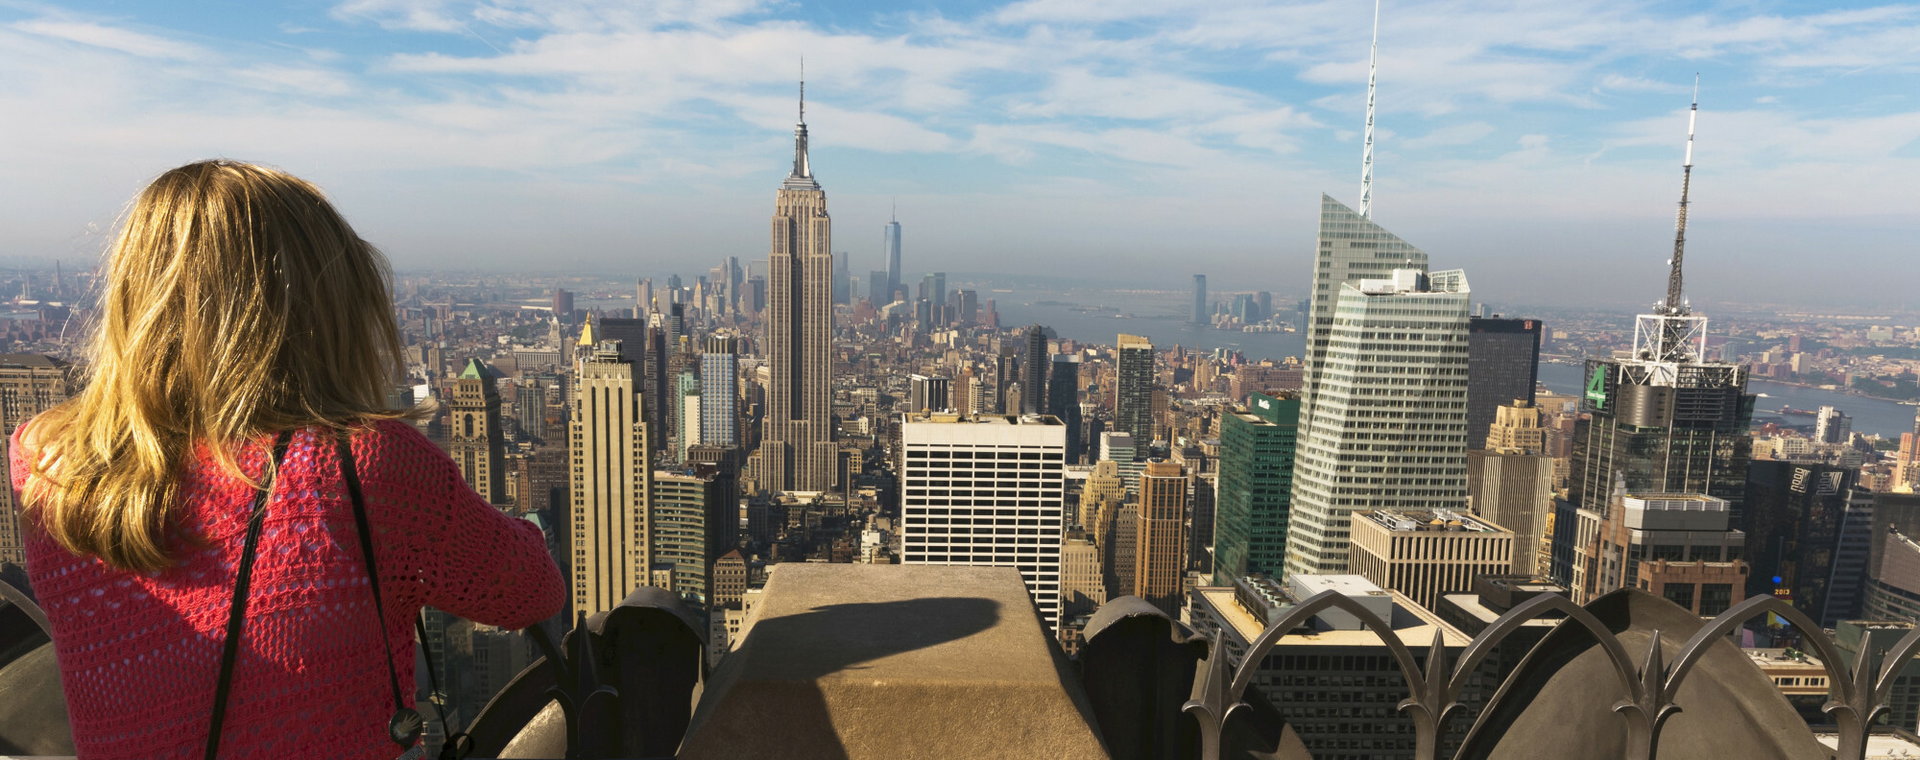 Widok na Manhattan z dachu Rockefeller Center w Nowym Jorku